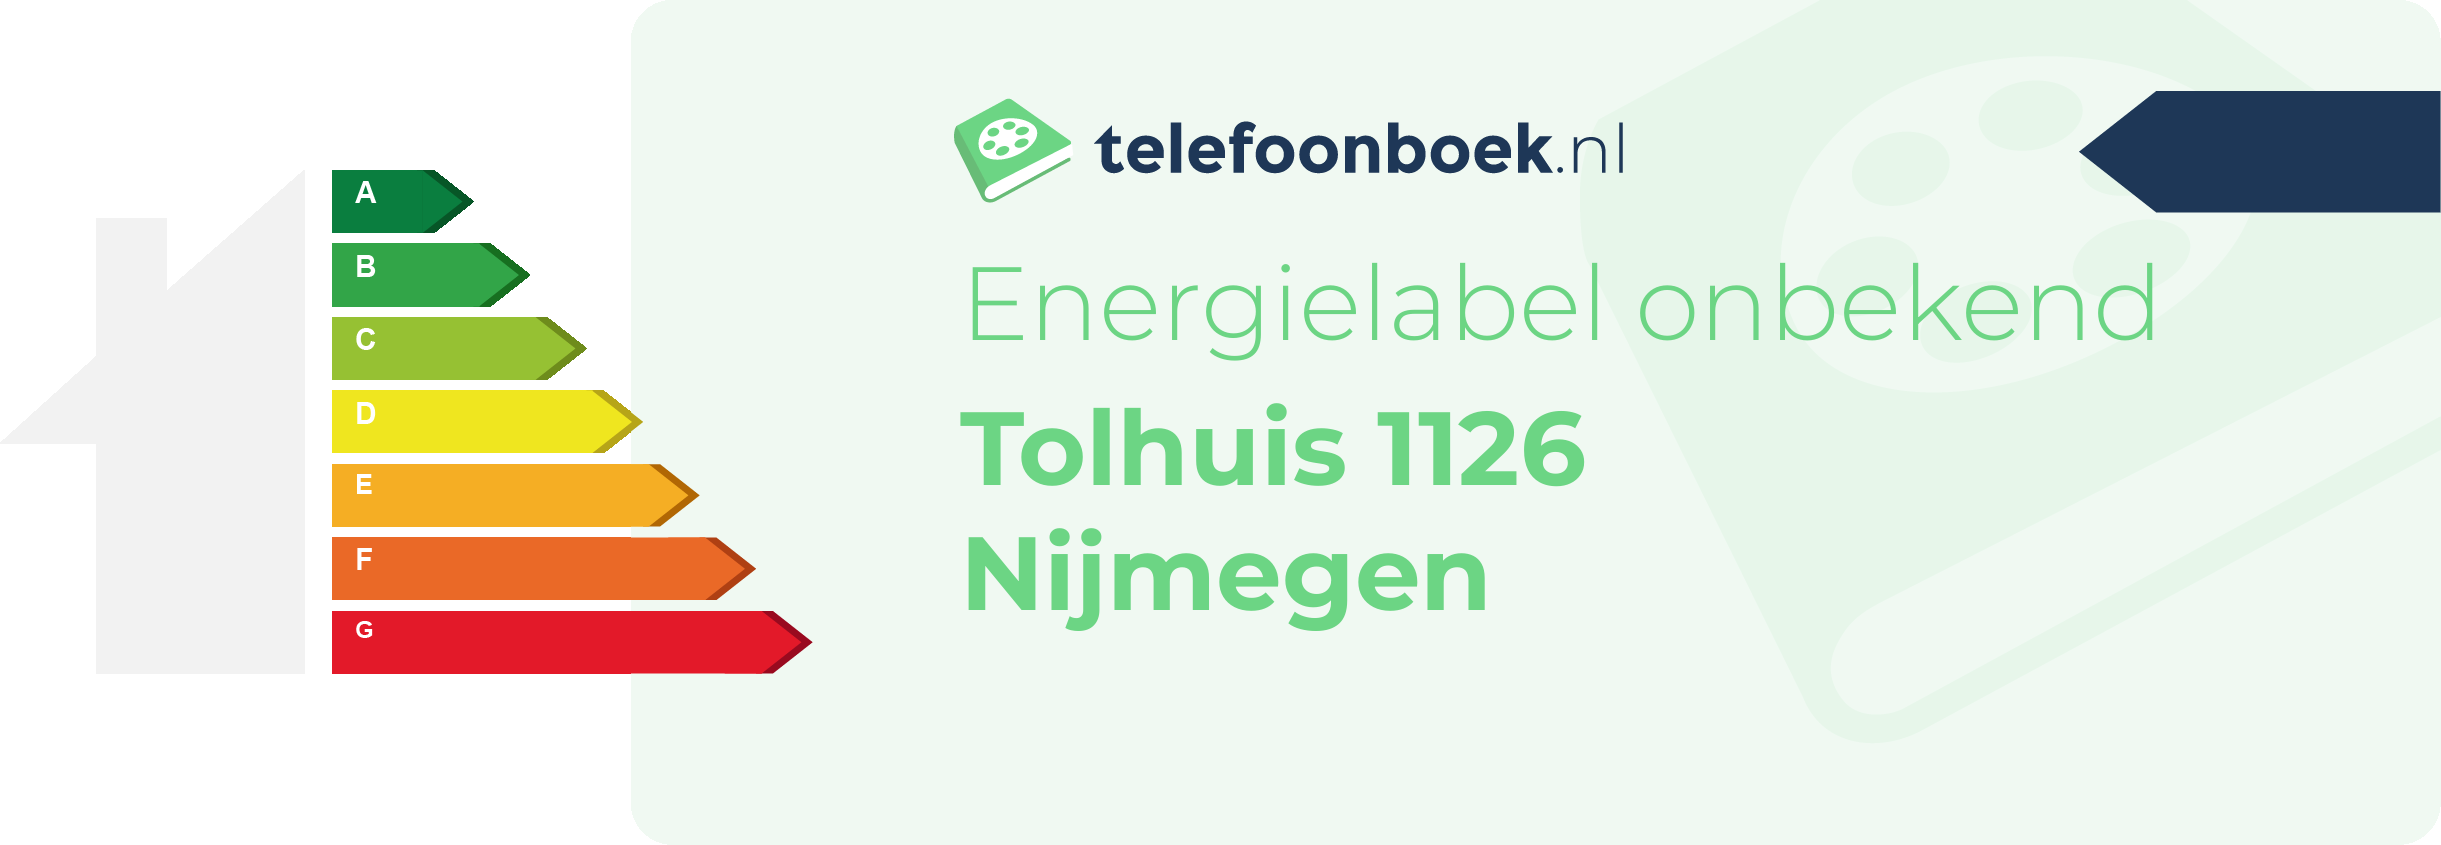 Energielabel Tolhuis 1126 Nijmegen